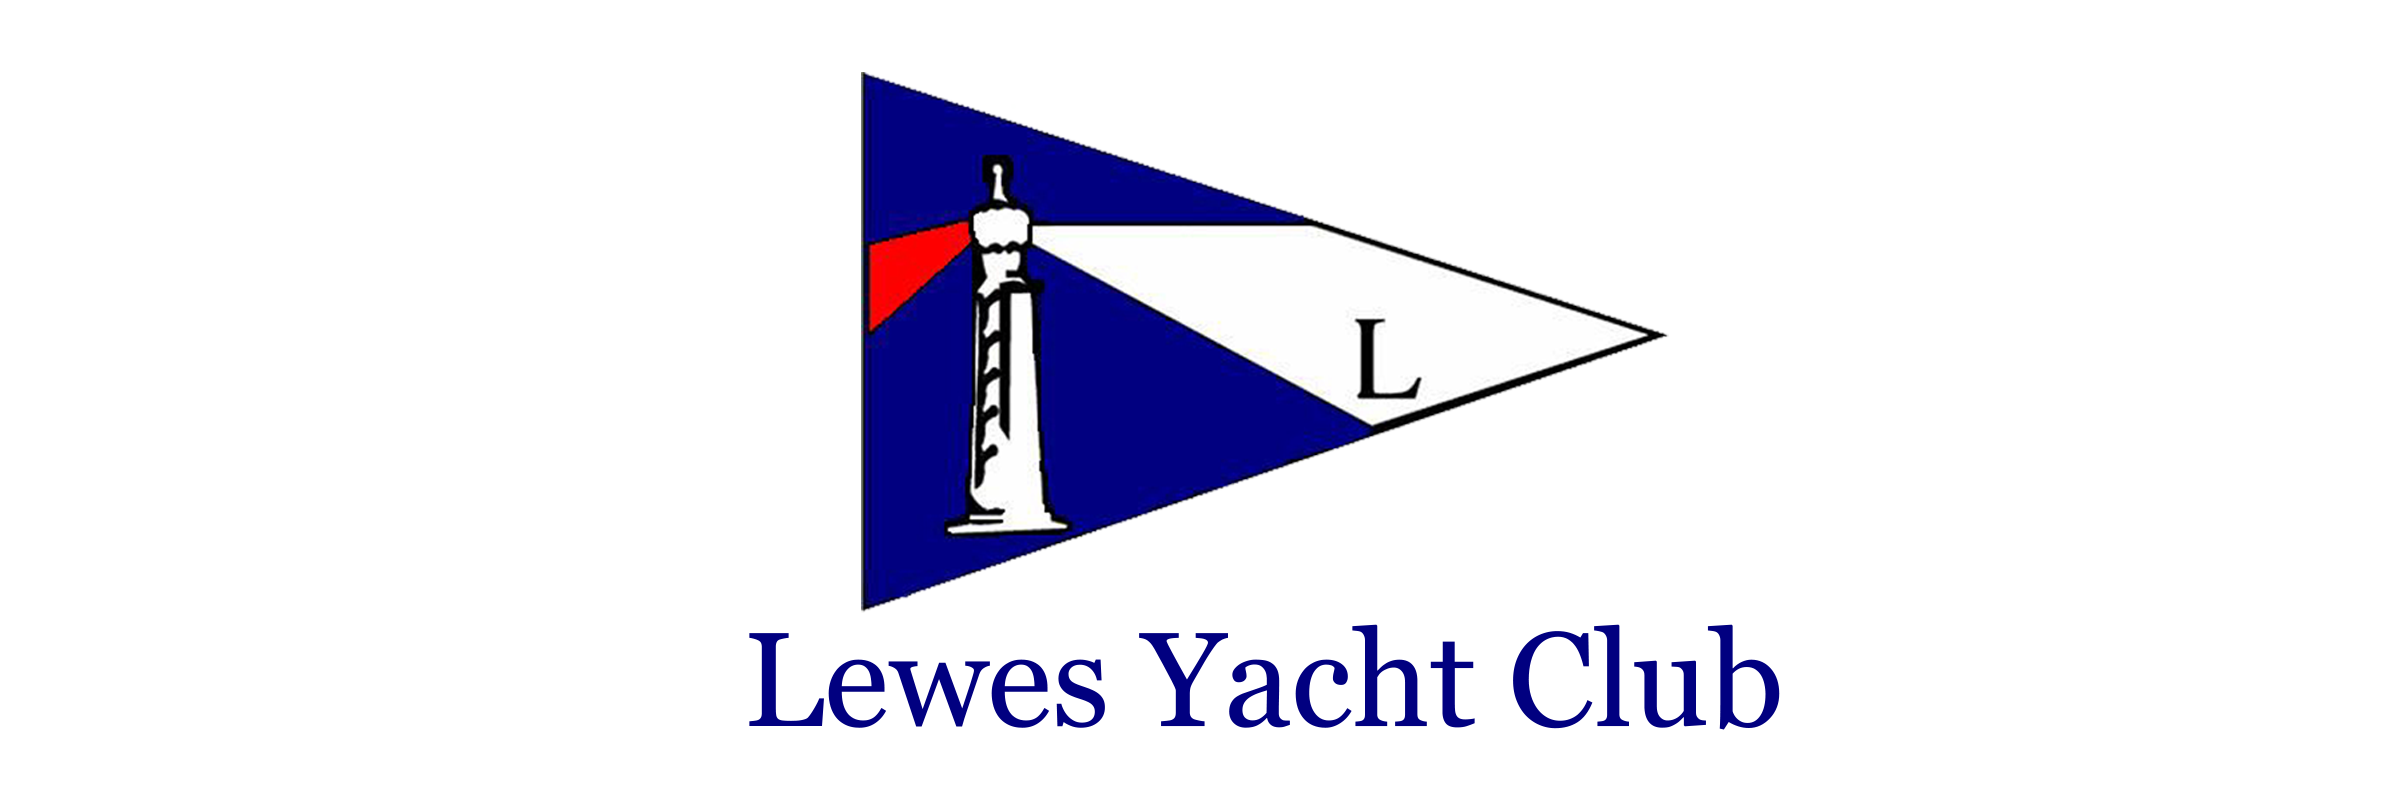 lewes yacht club membership waiting list